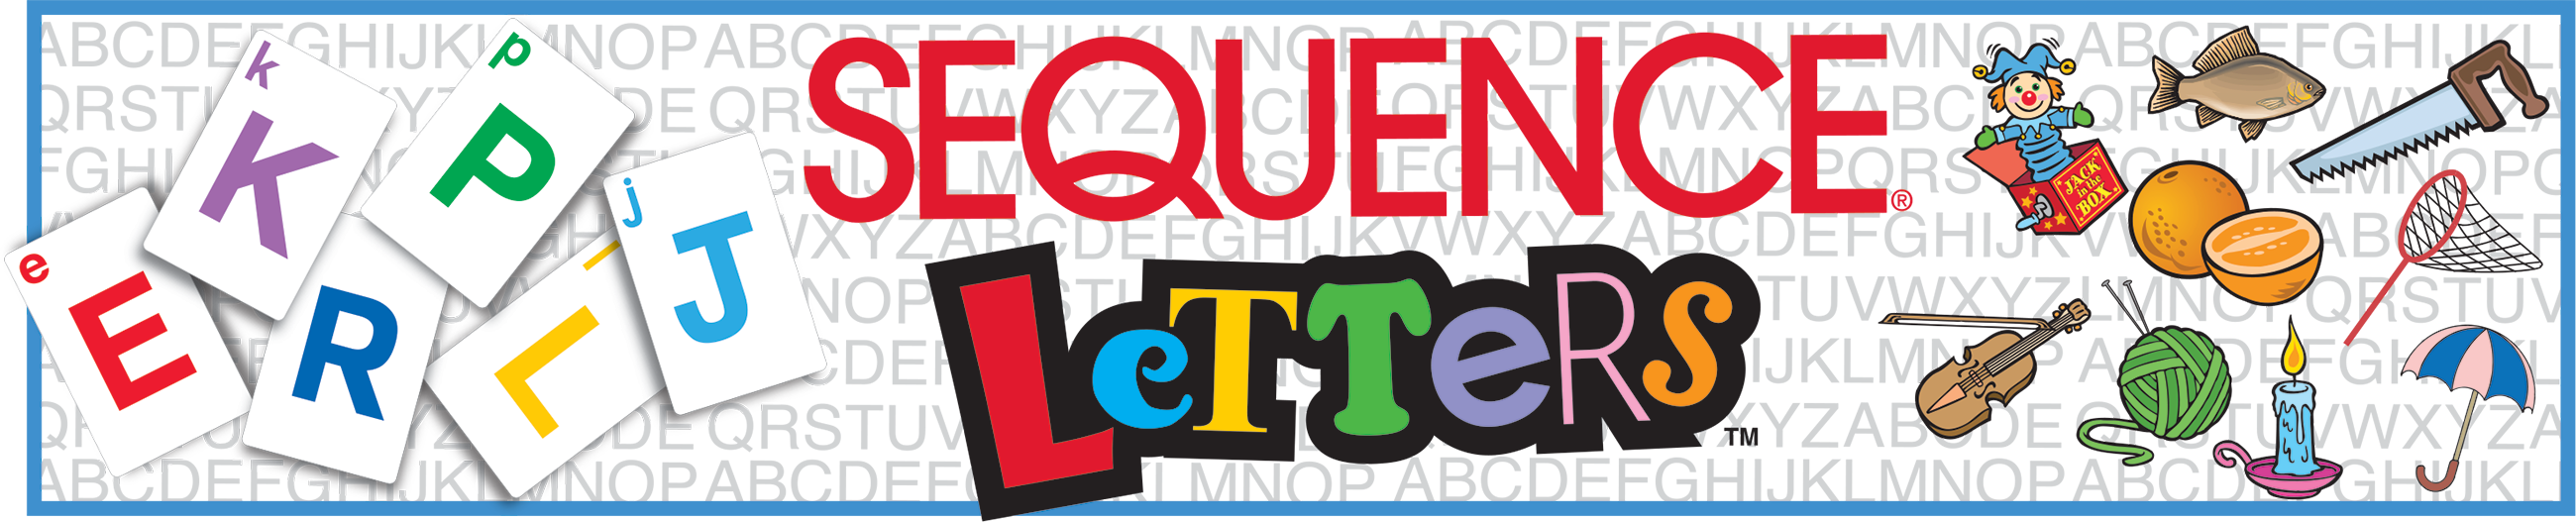 Sequence - Letters, Jax Ltd., Inc.